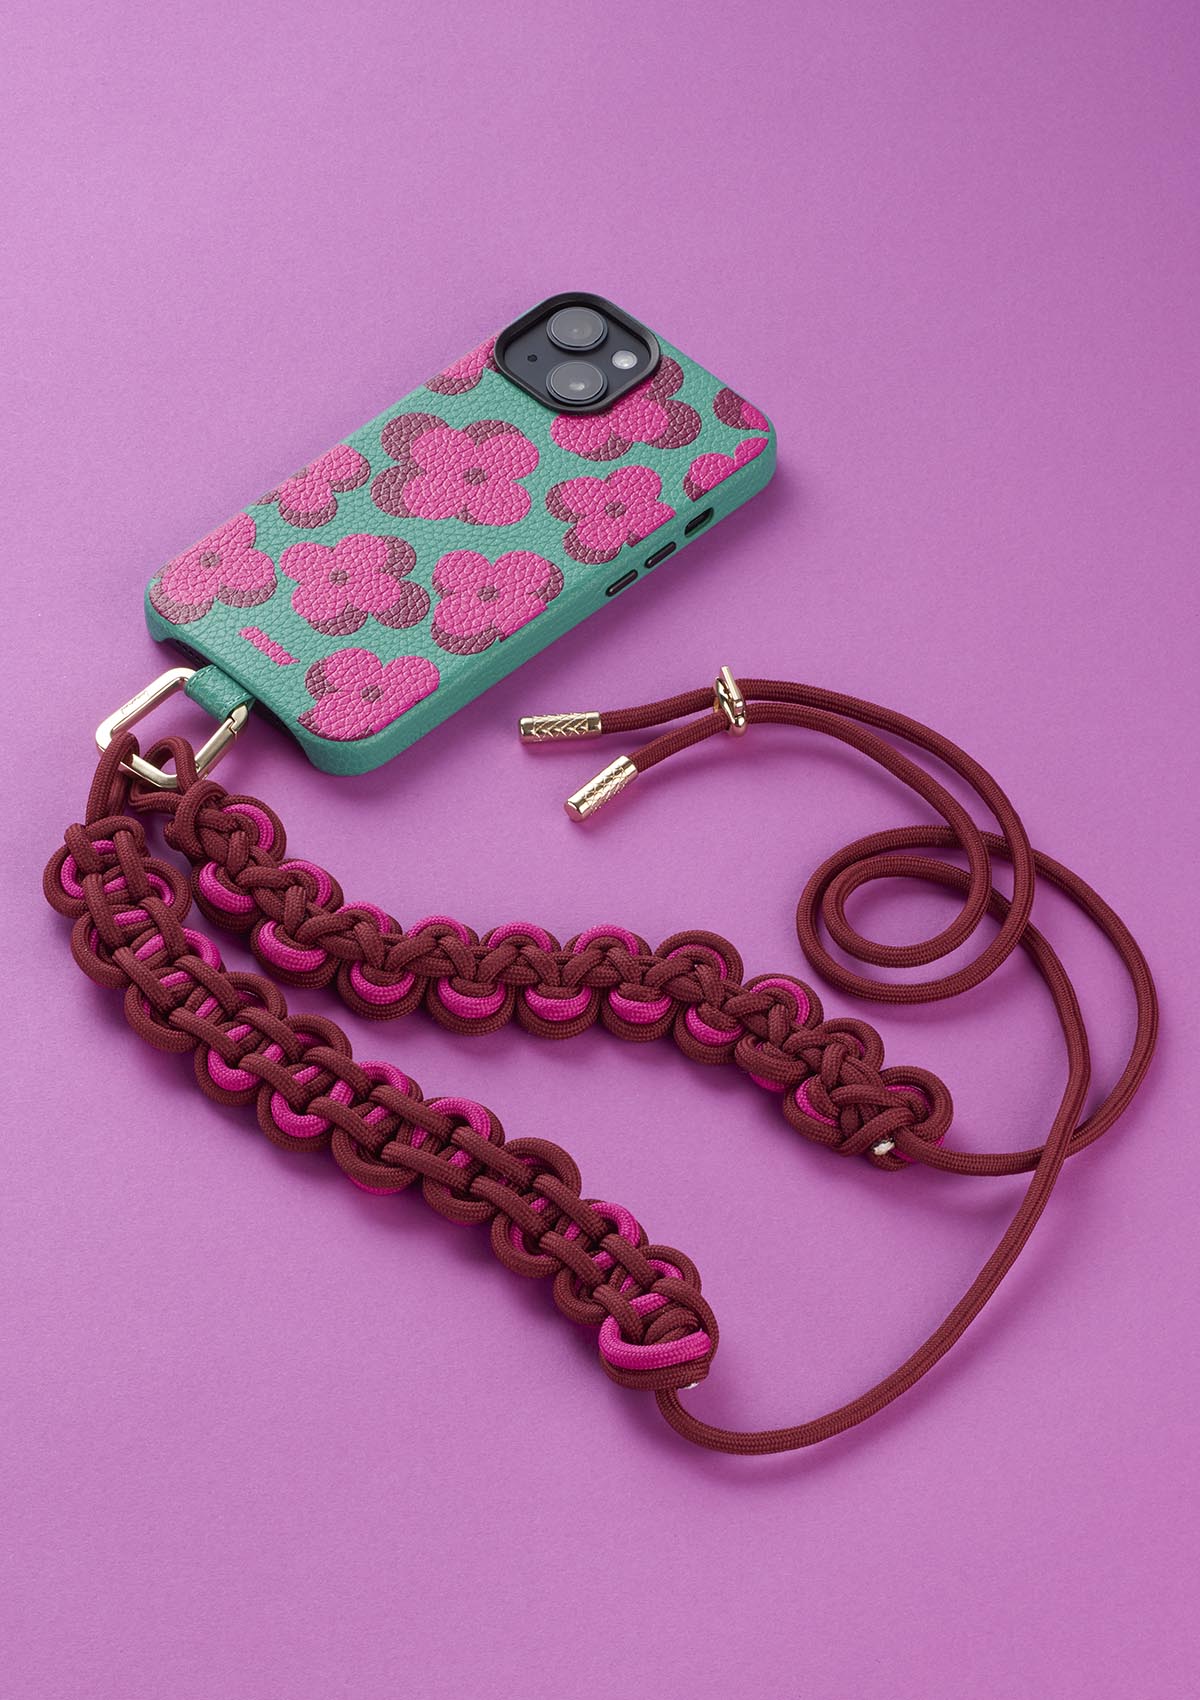 Cover Untags per iPhone 14 Pro Max in colore verde con fiori e Phone Necklace Scoubidou regolabile bordeaux e rosa